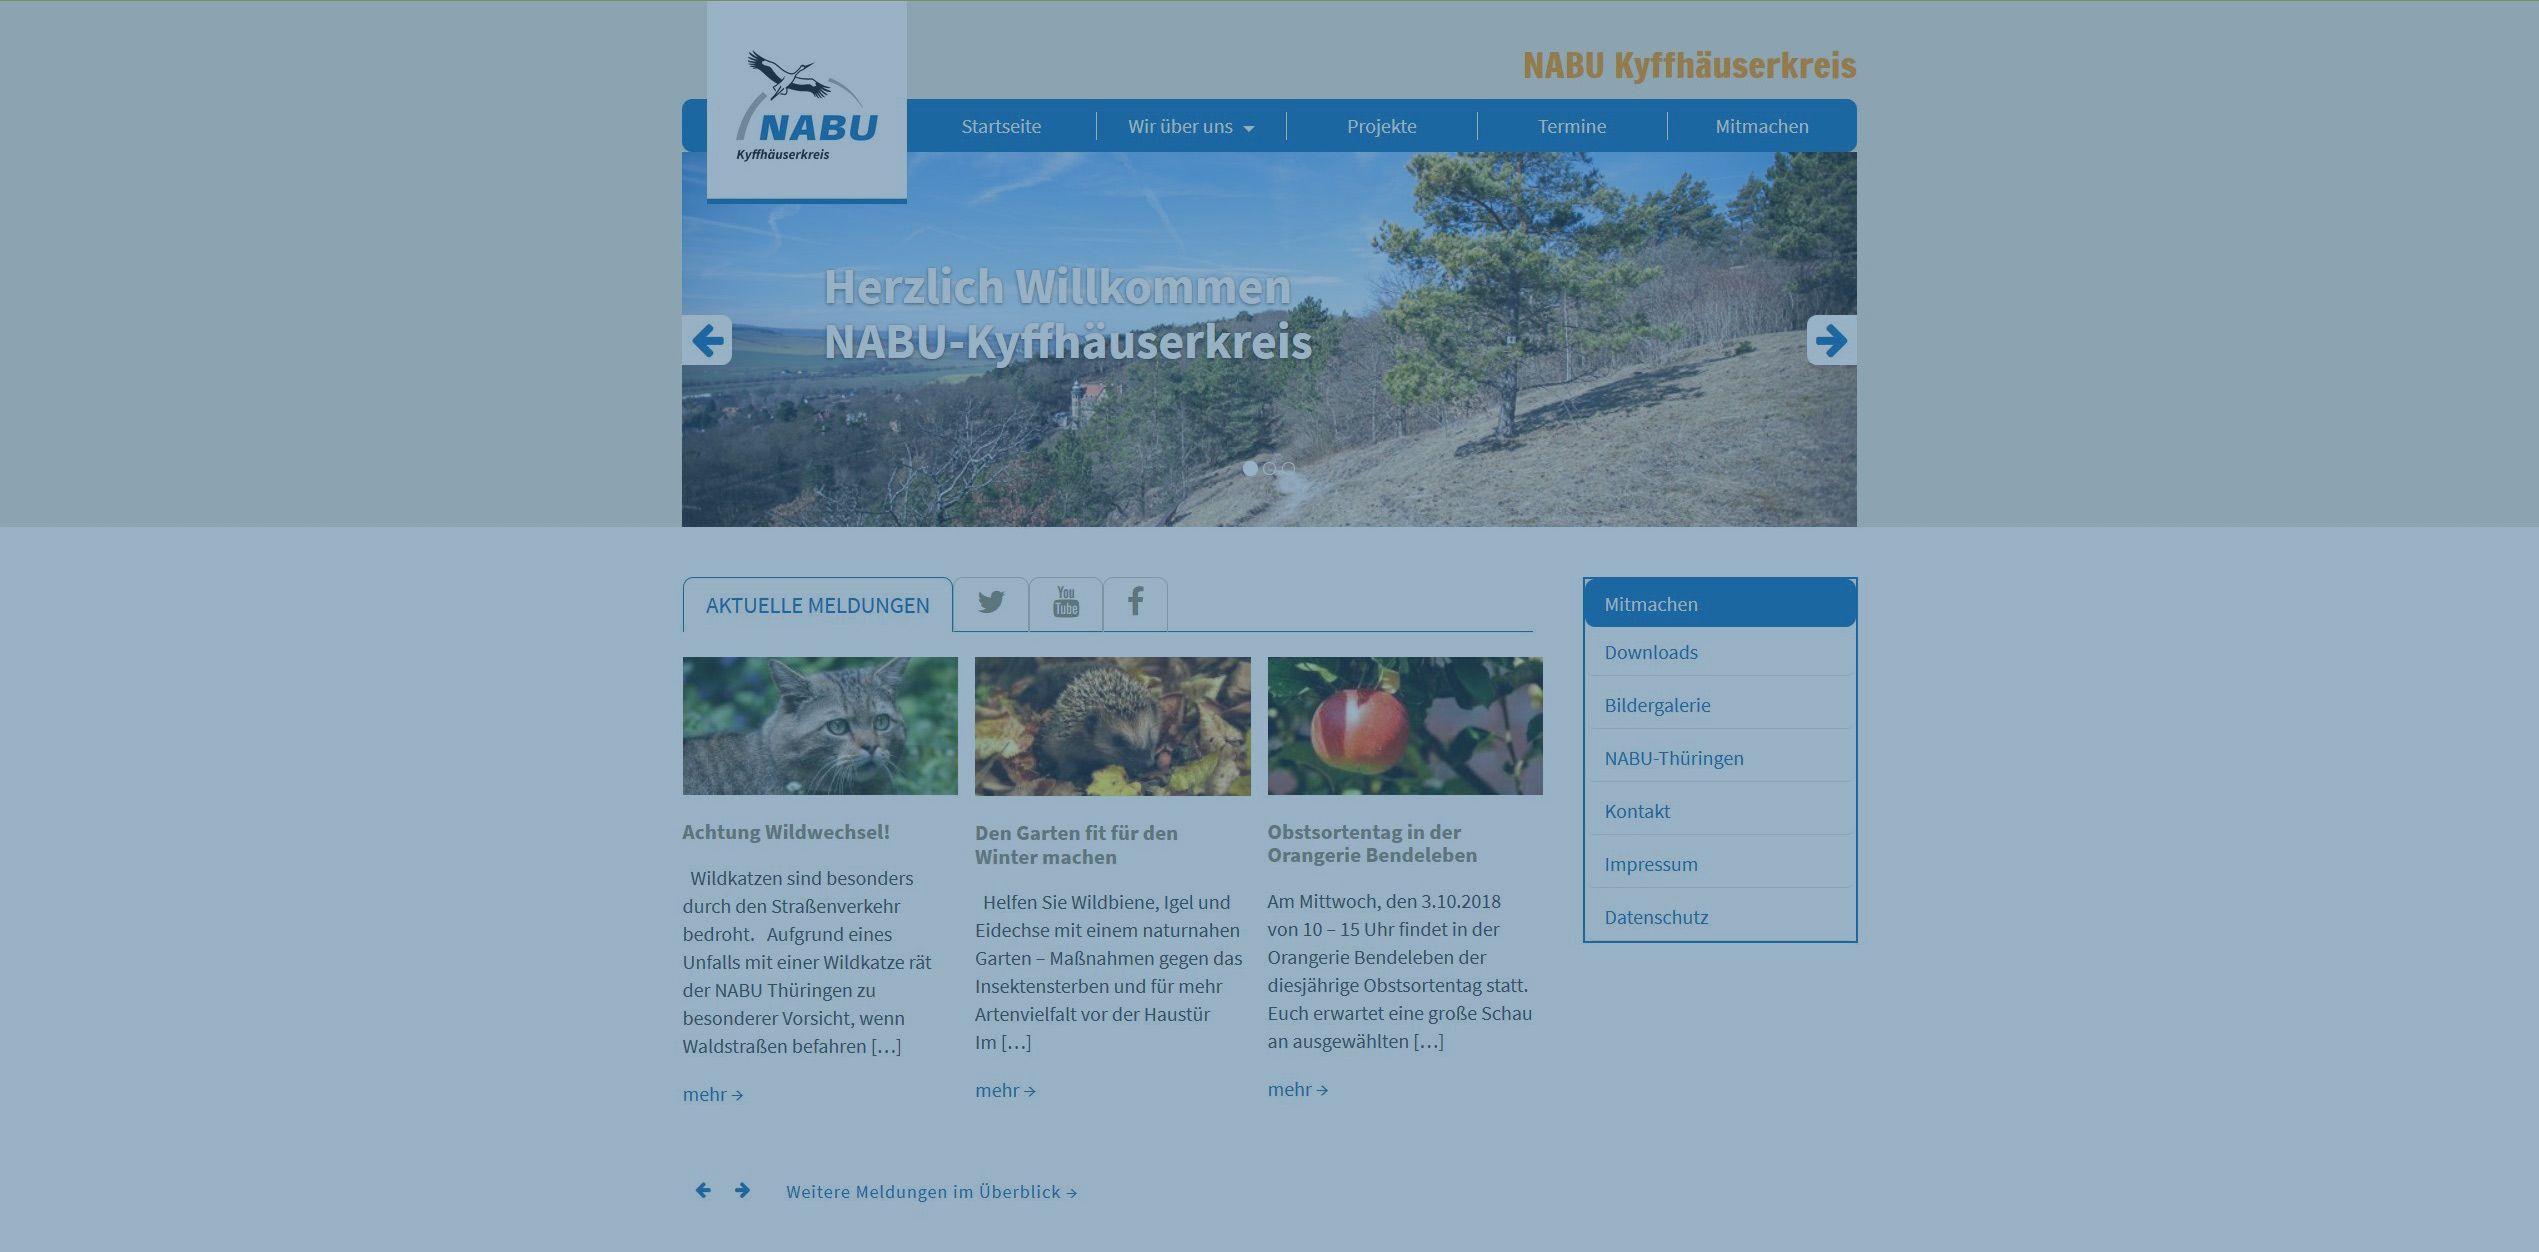 Naturschutzbund Kyffhäuserkreis | NABU